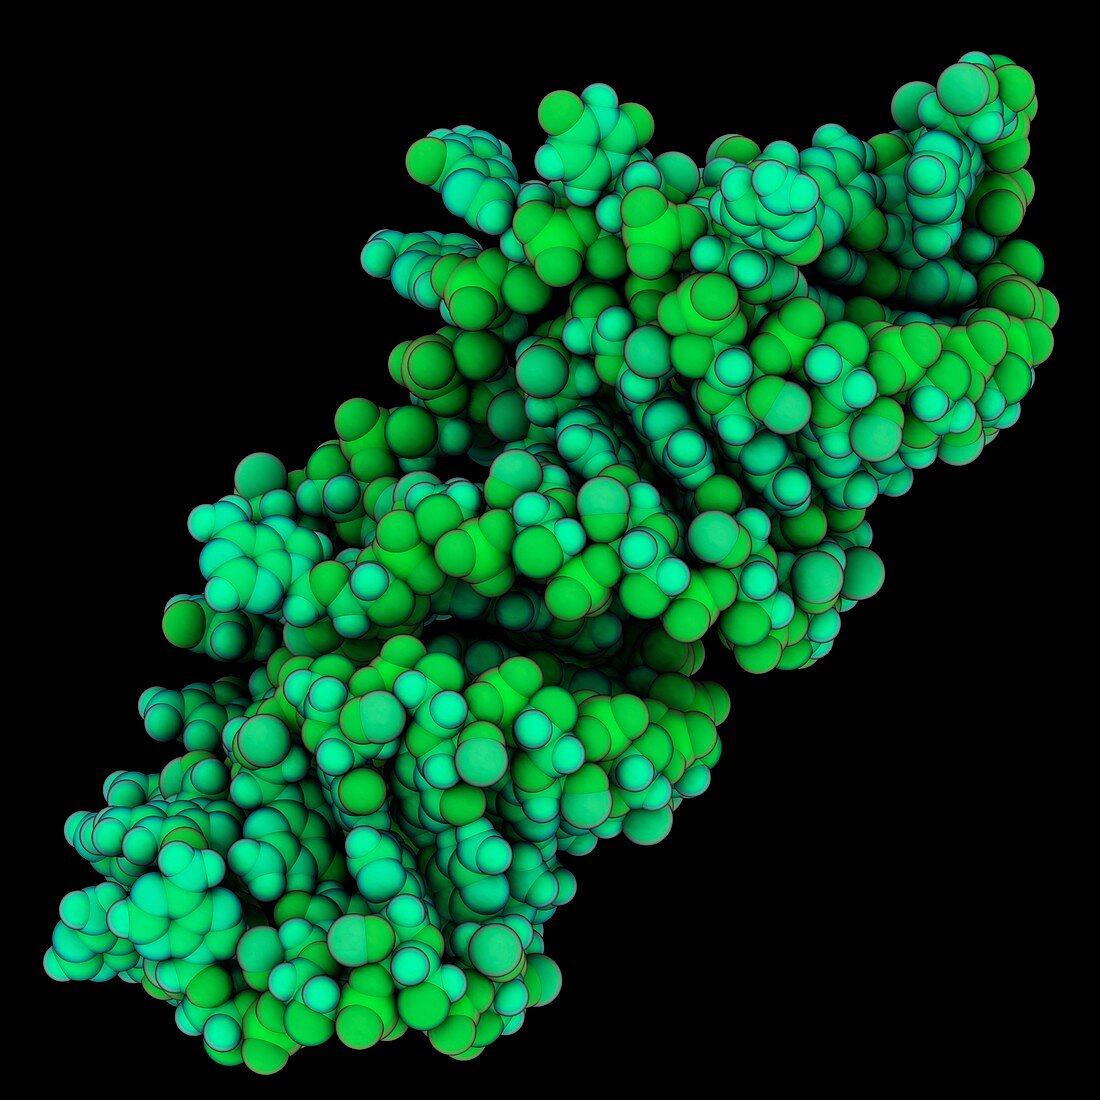 Retroviral RNA